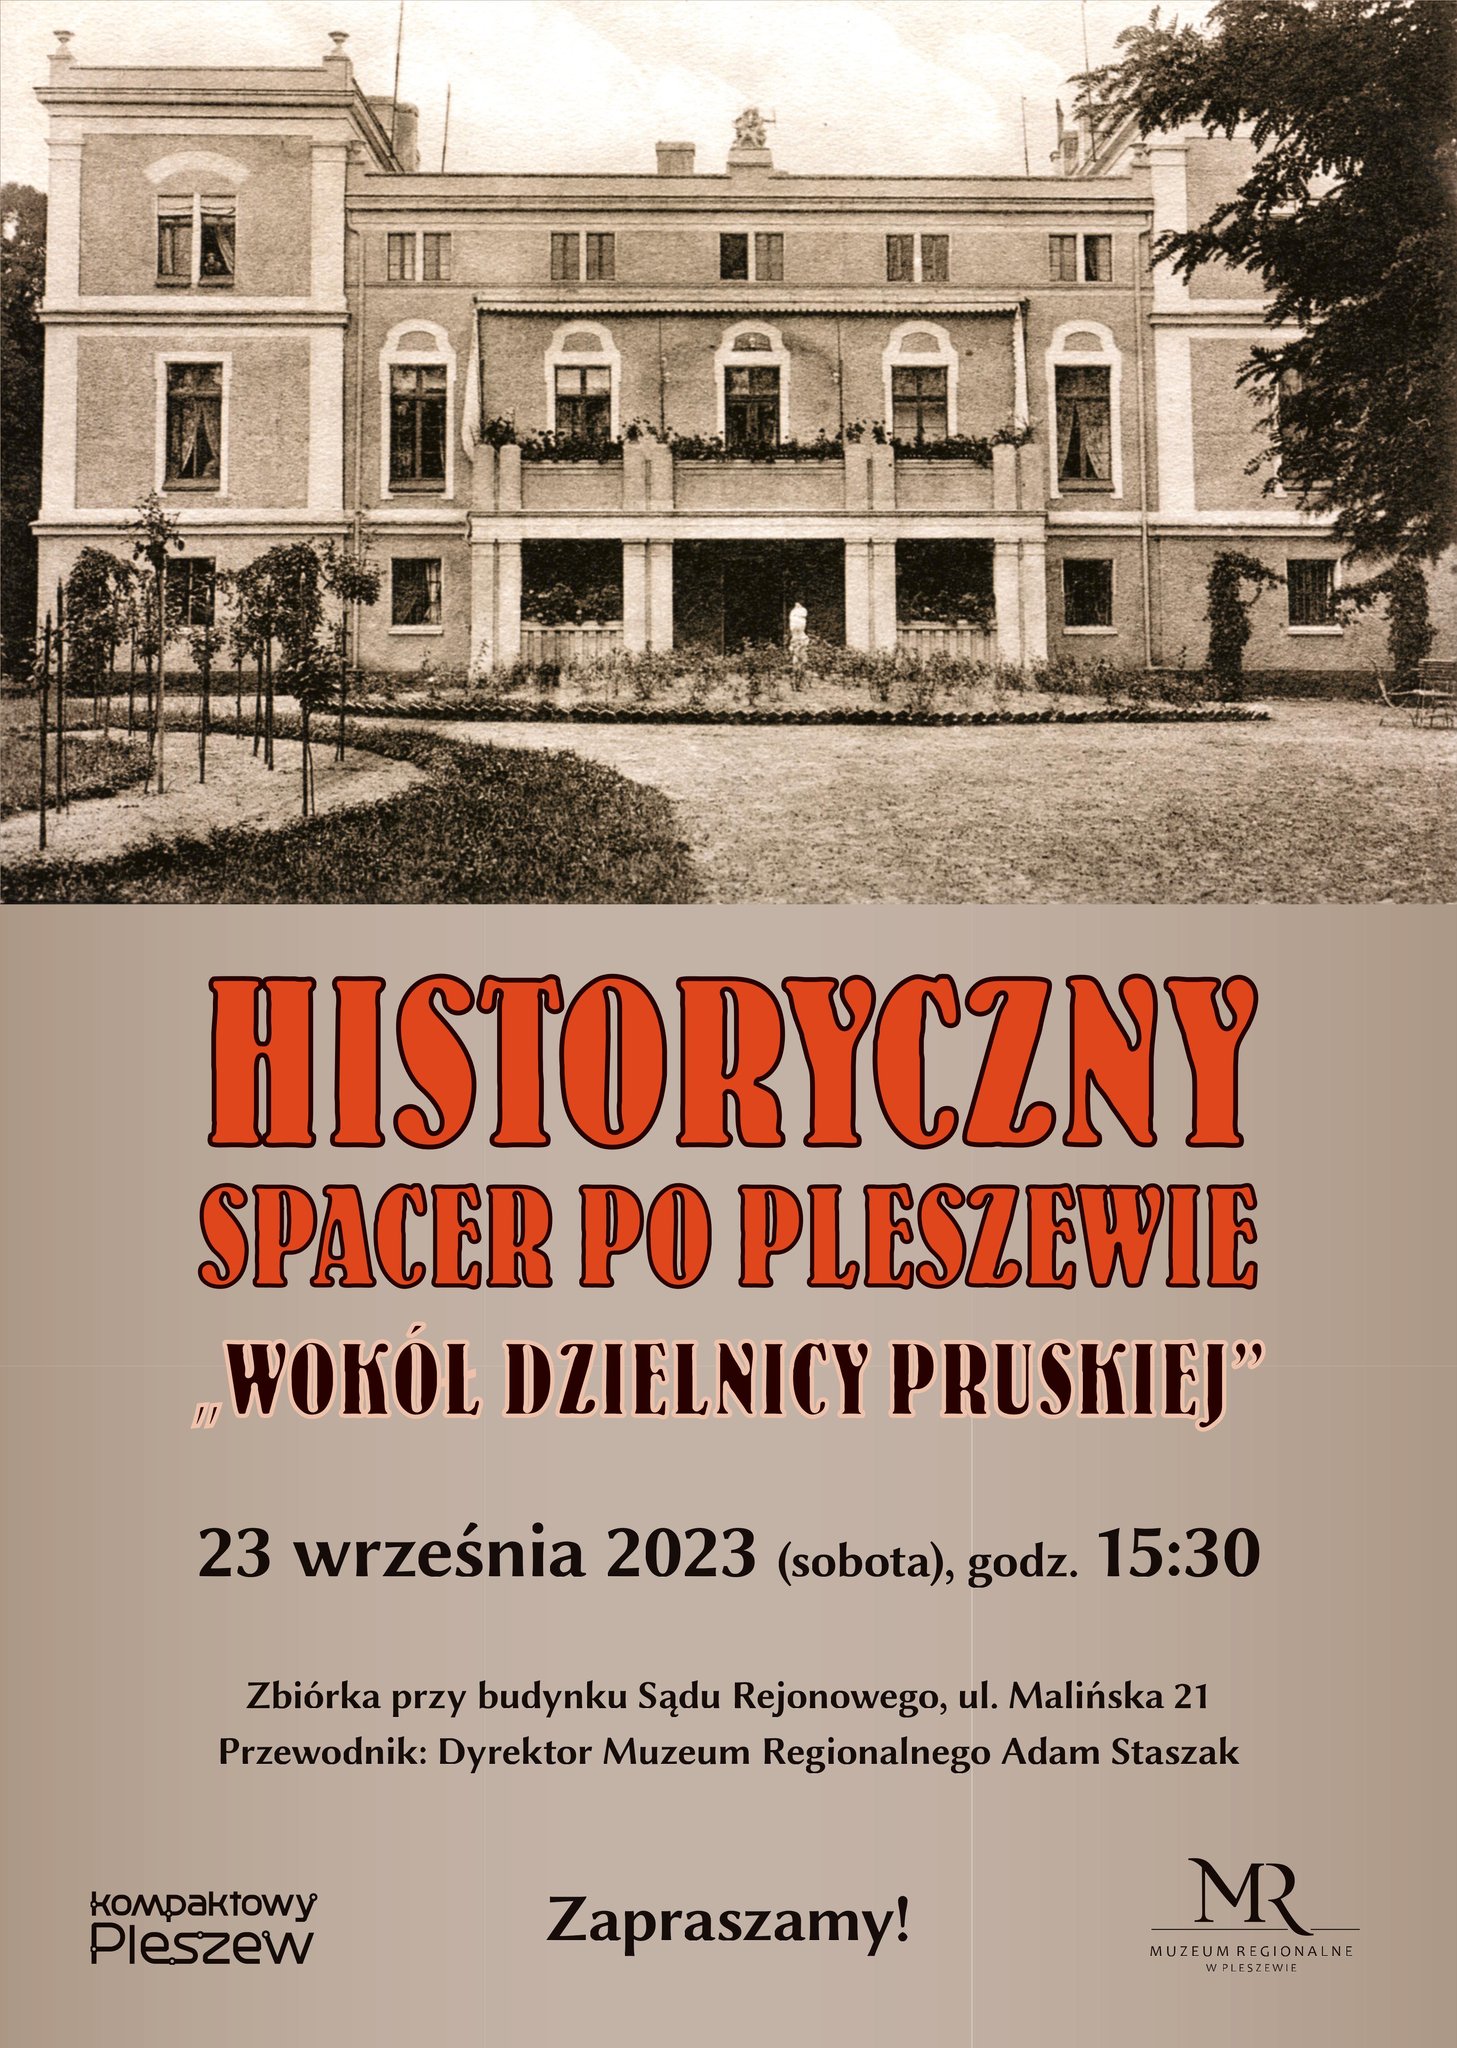 Plakat Historycznego spaceru po Pleszewie - wokół dzielnicy pruskiej organizowanego przez Muzeum Regionalne w Pleszewie 23 września 2023 roku o godzinie 15:30 pod budynkiem Sądu Rejonowego przy ul. Malińśkiej.